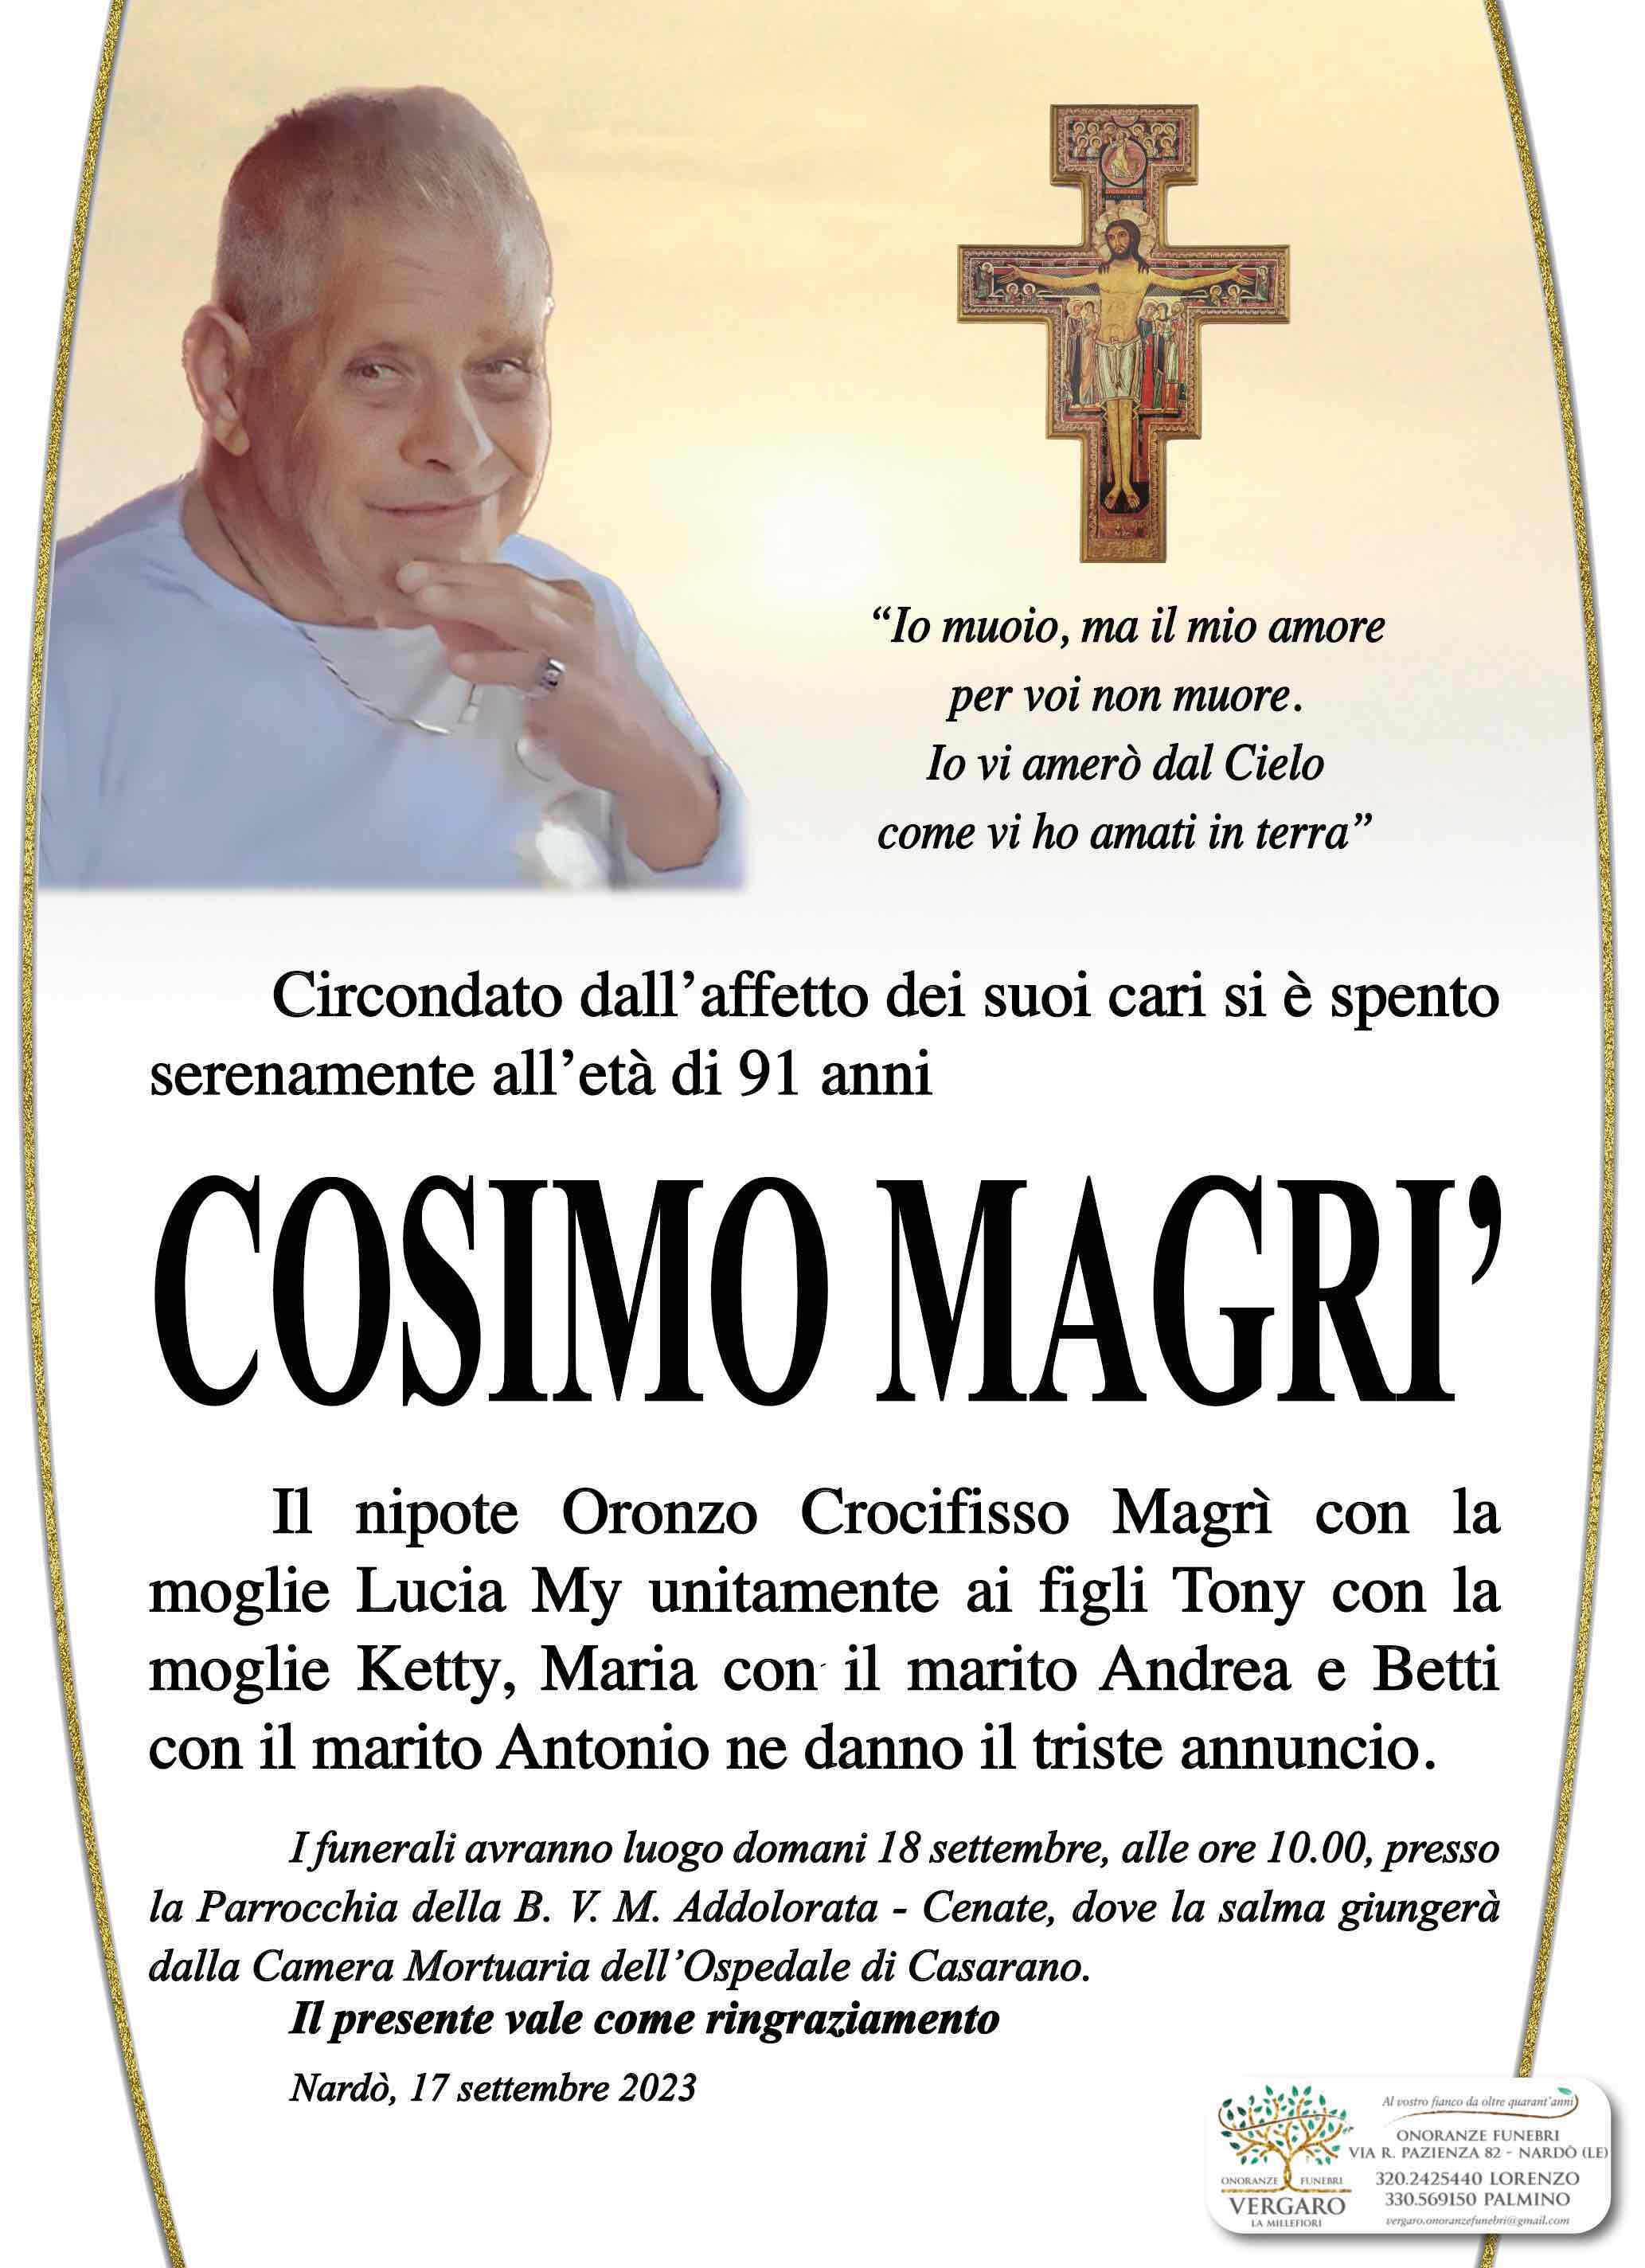 Cosimo Magrì